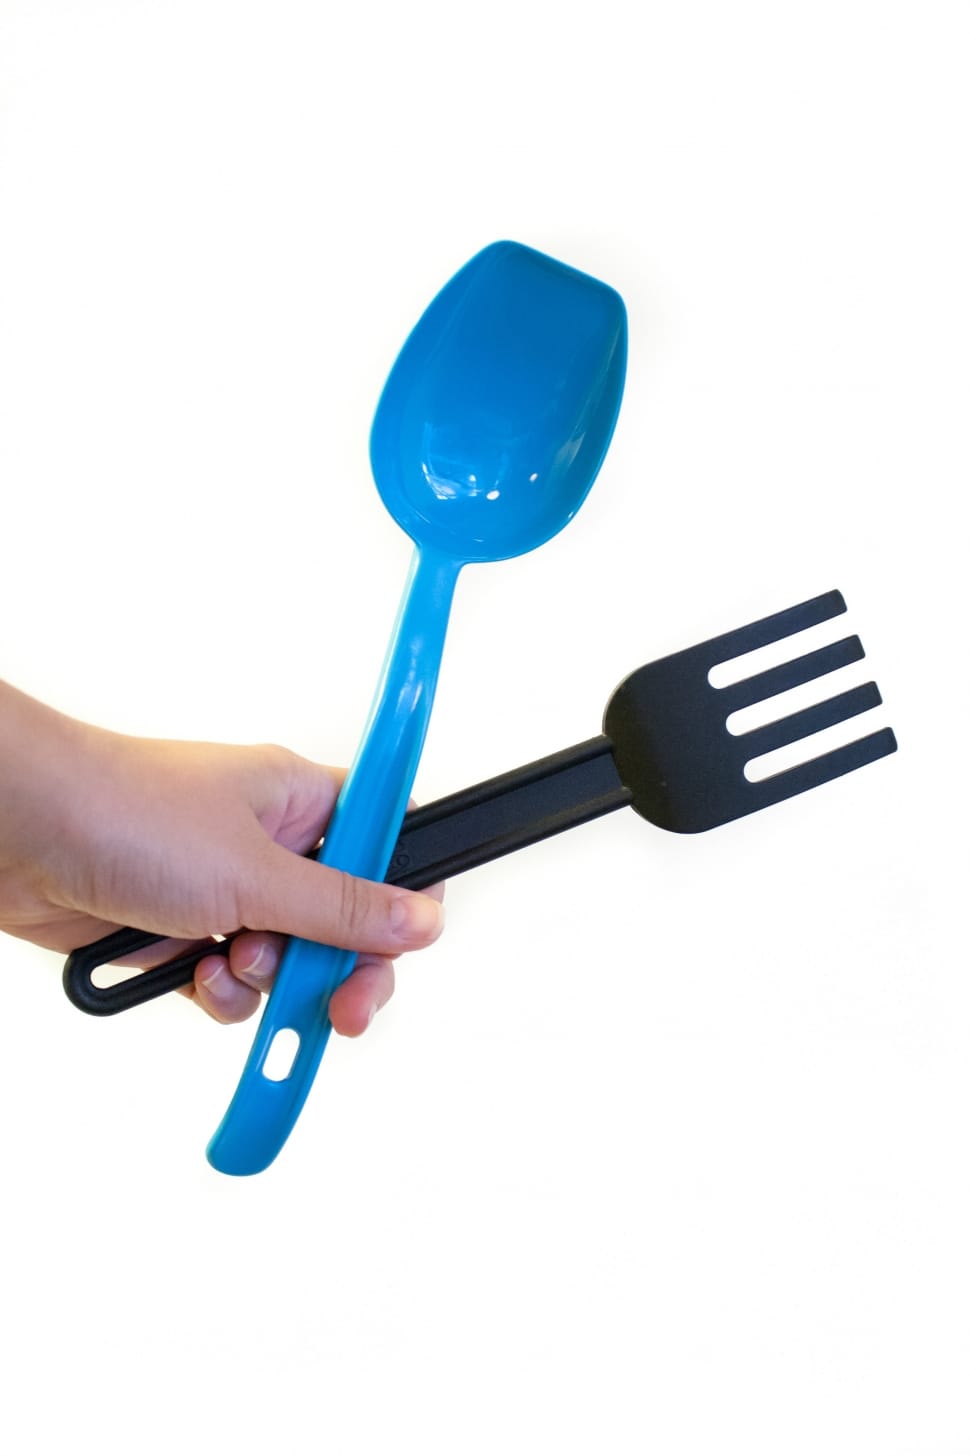 black plastic fork ladle and blue plastic ladle preview